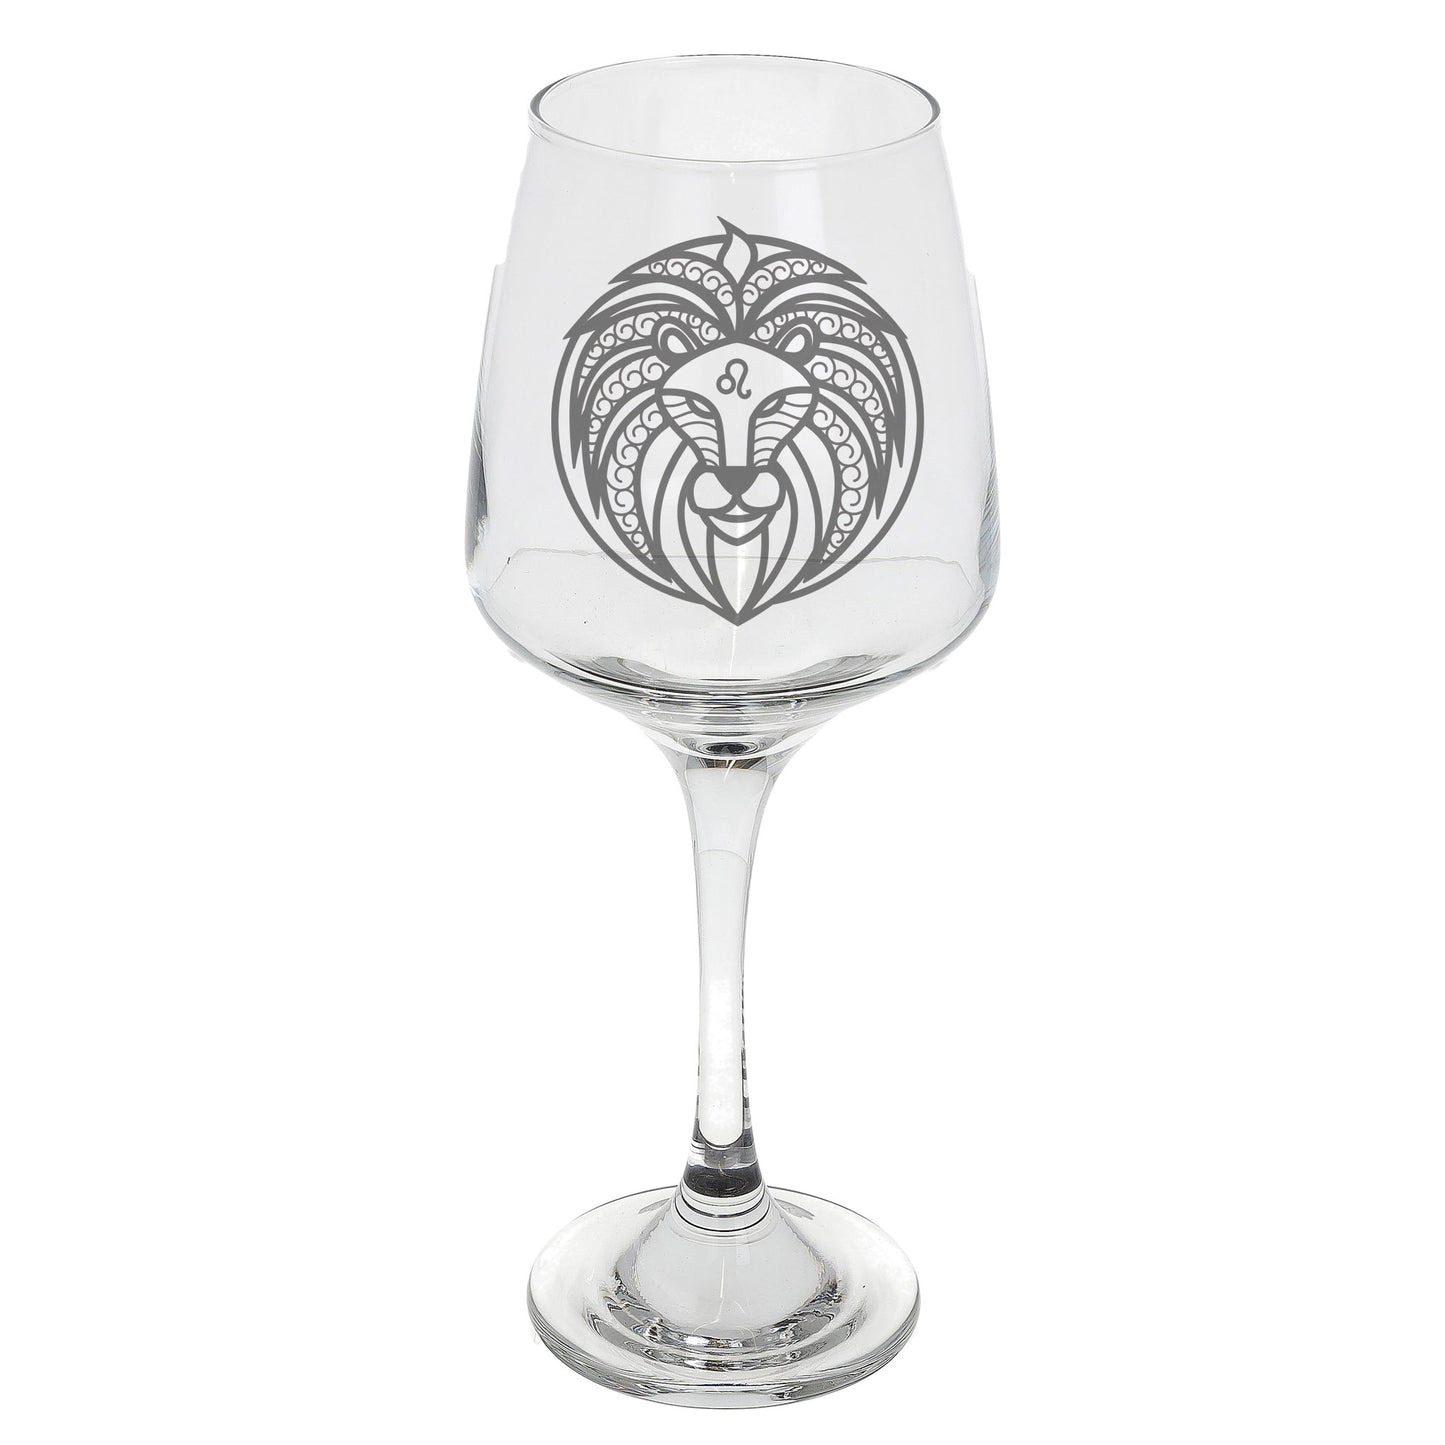 Leo Zodiac Engraved Wine Glass  - Always Looking Good -   